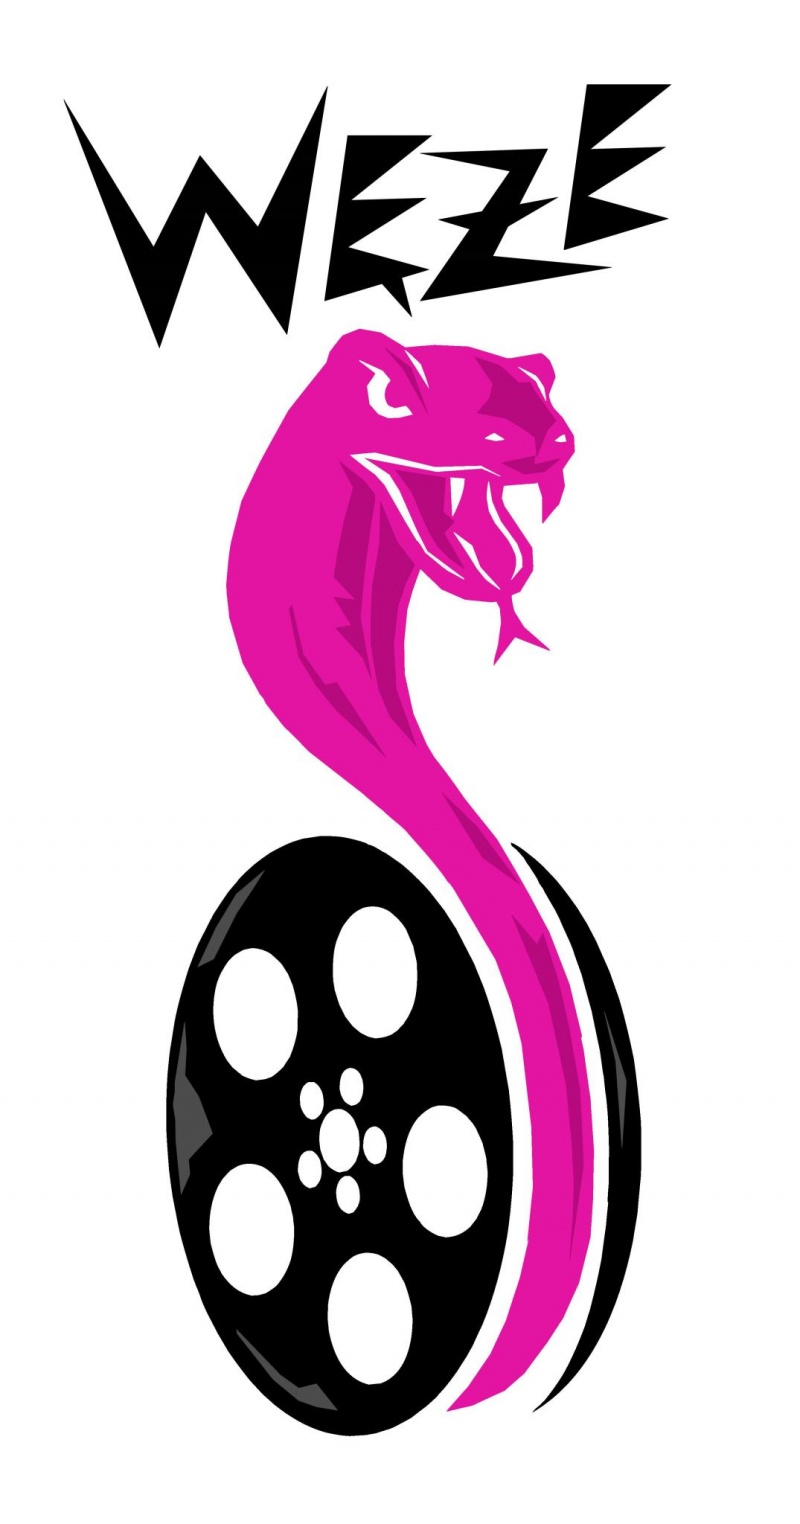 Oficjalne logo Węży (źródło: FB; autor grafiki: Karol Kalinowski)  